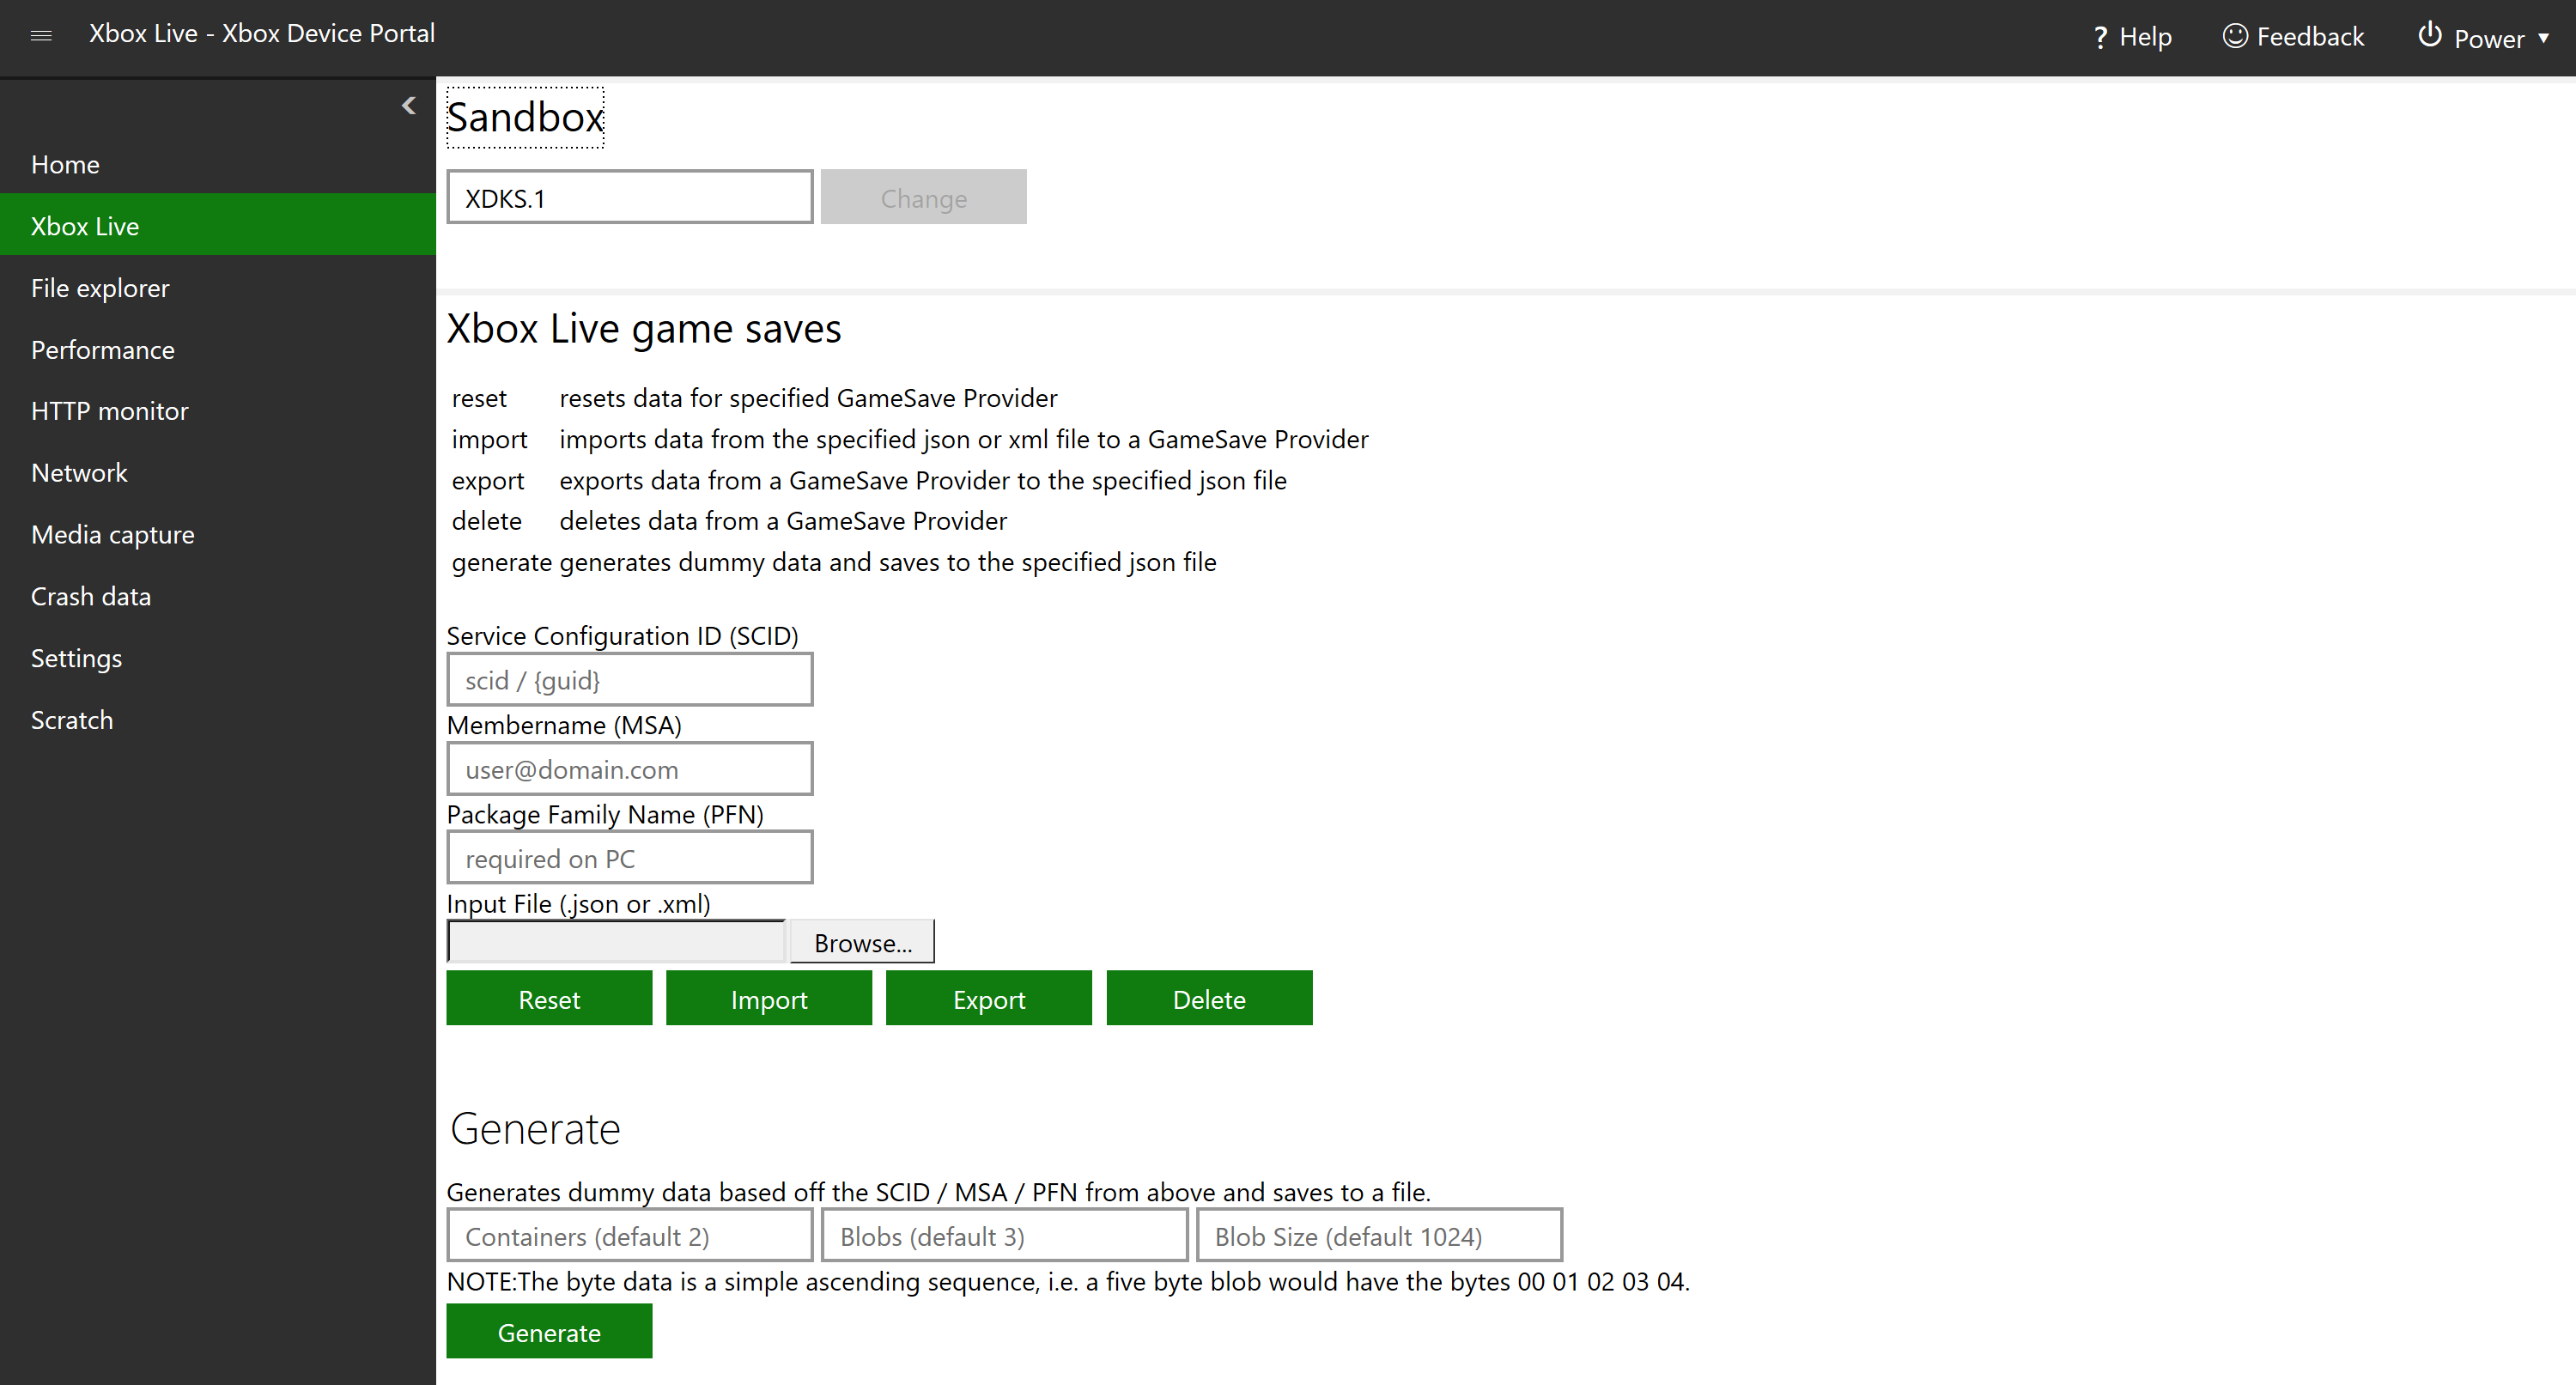 Device Portal per Xbox - UWP applications | Microsoft Learn